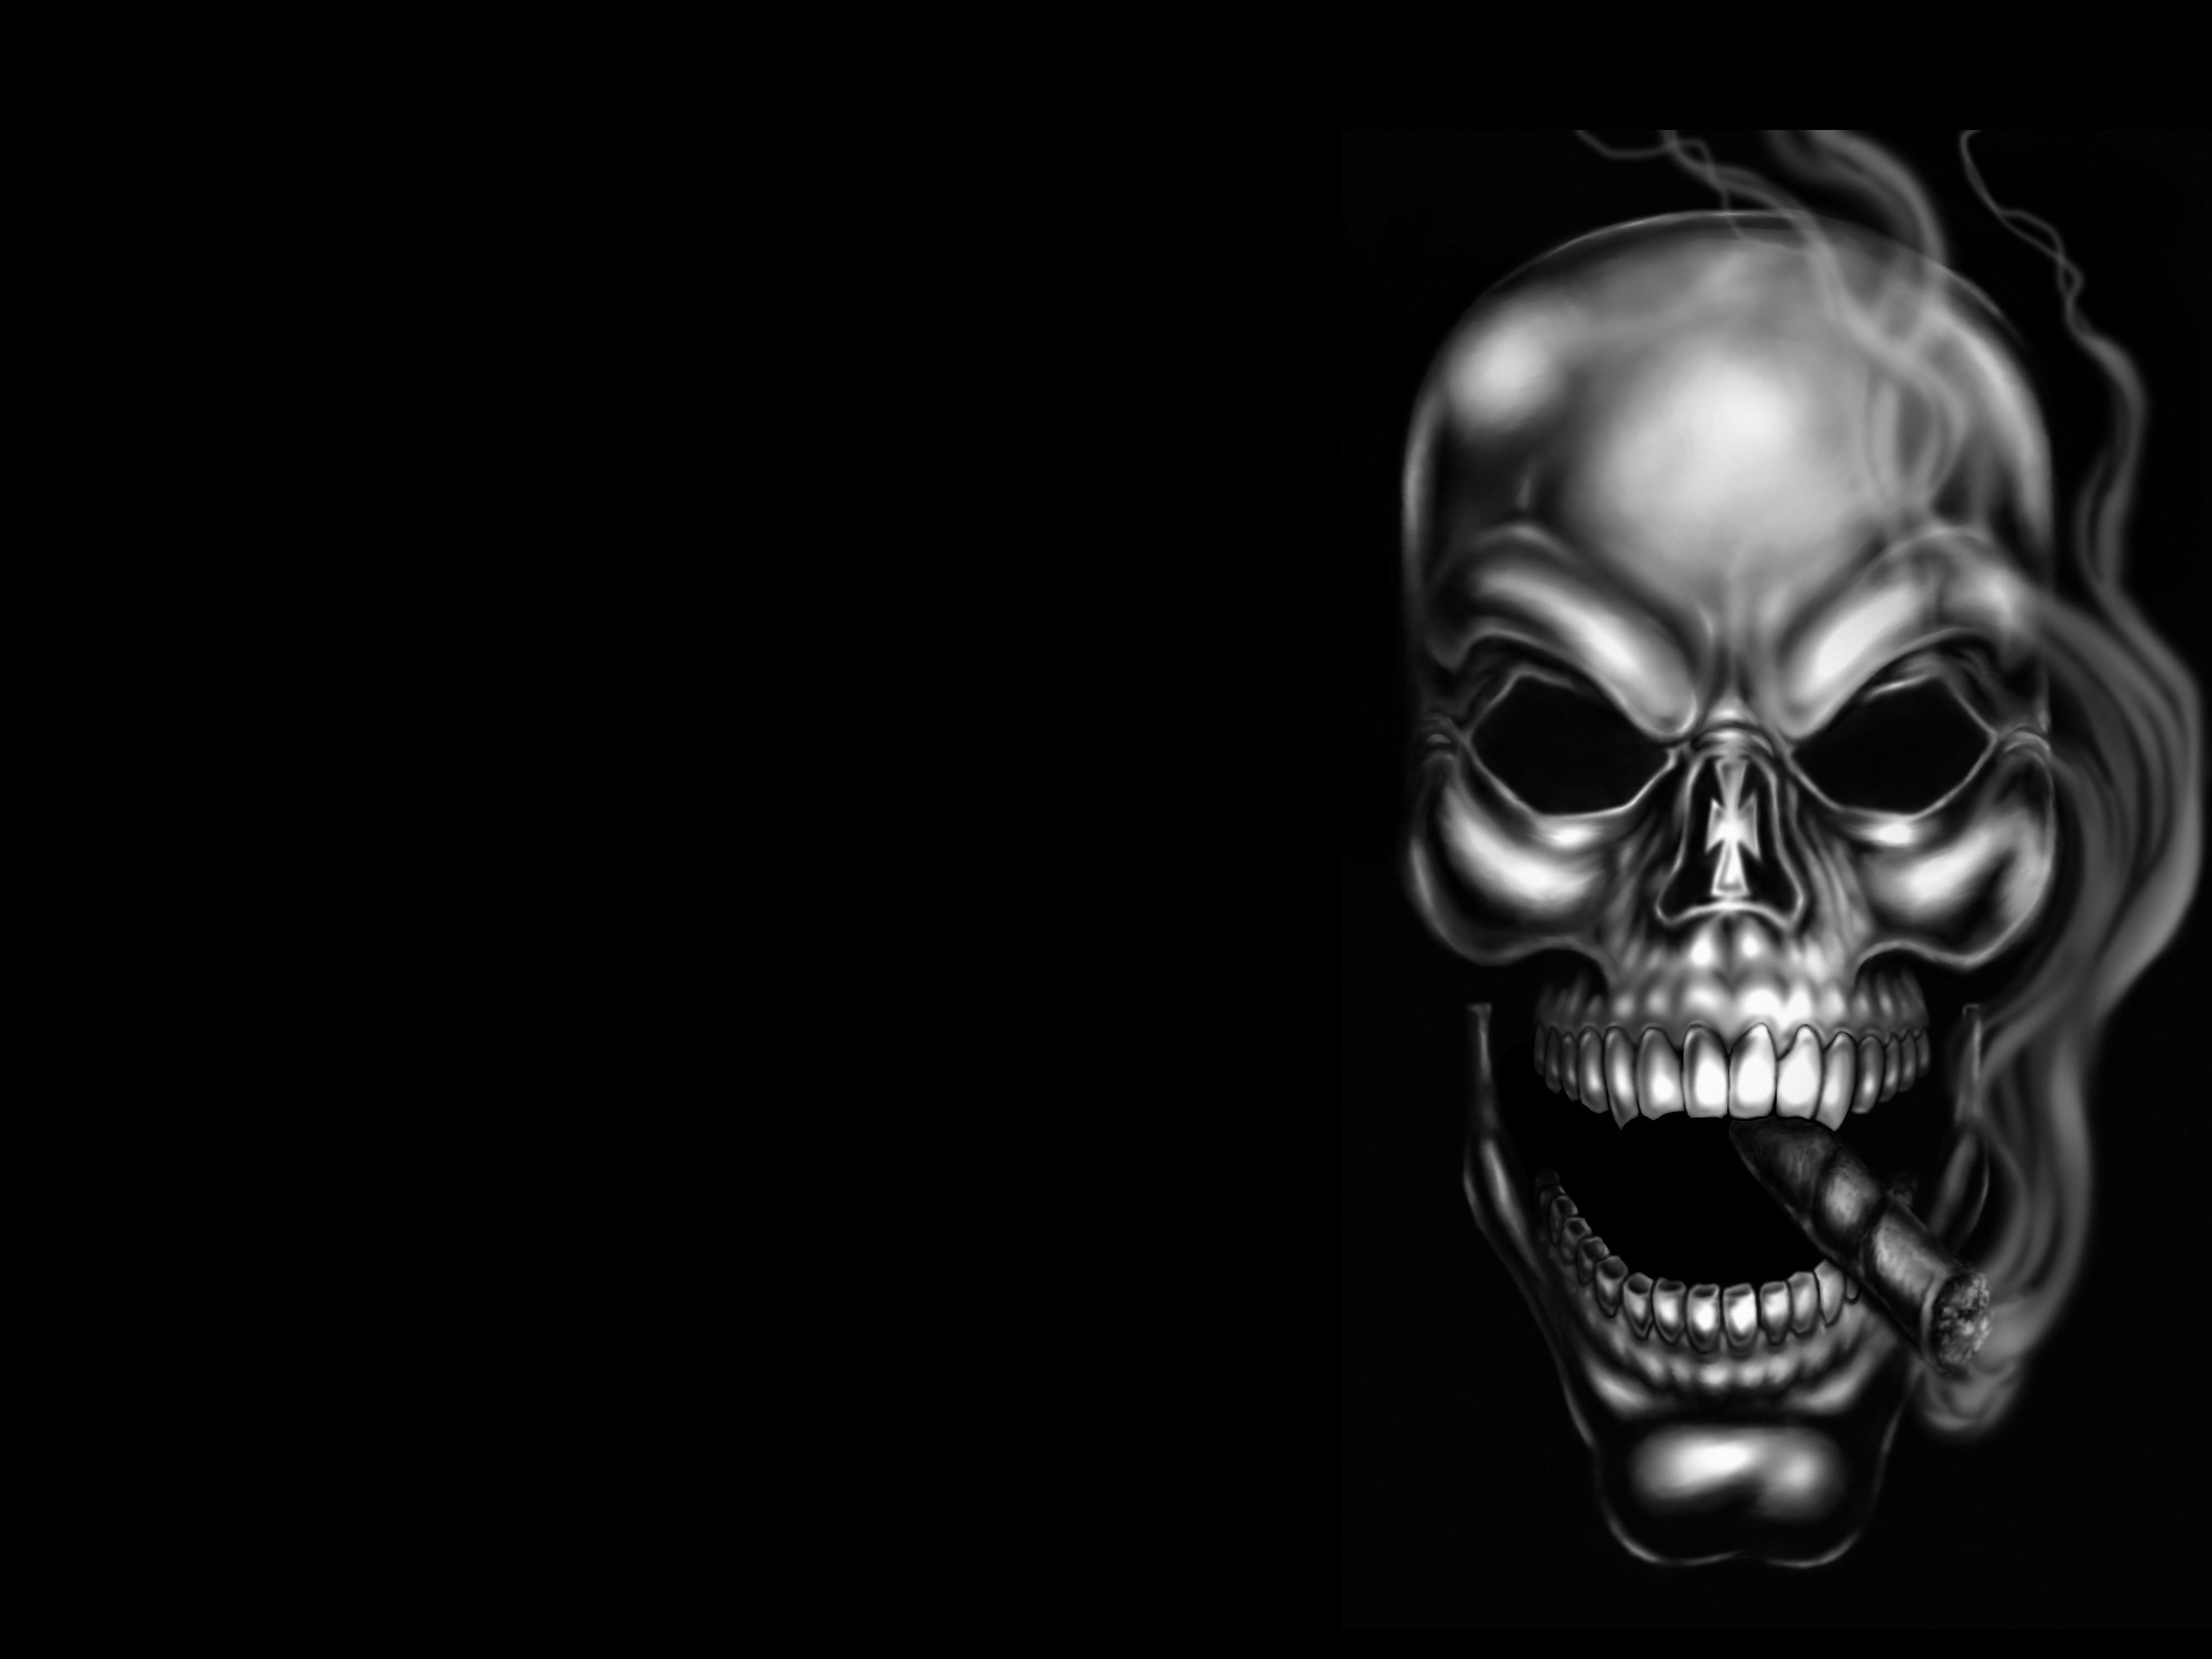 4000 x 3000 · jpeg - Dark Skull 4k Ultra HD Wallpaper | Background Image | 4000x3000